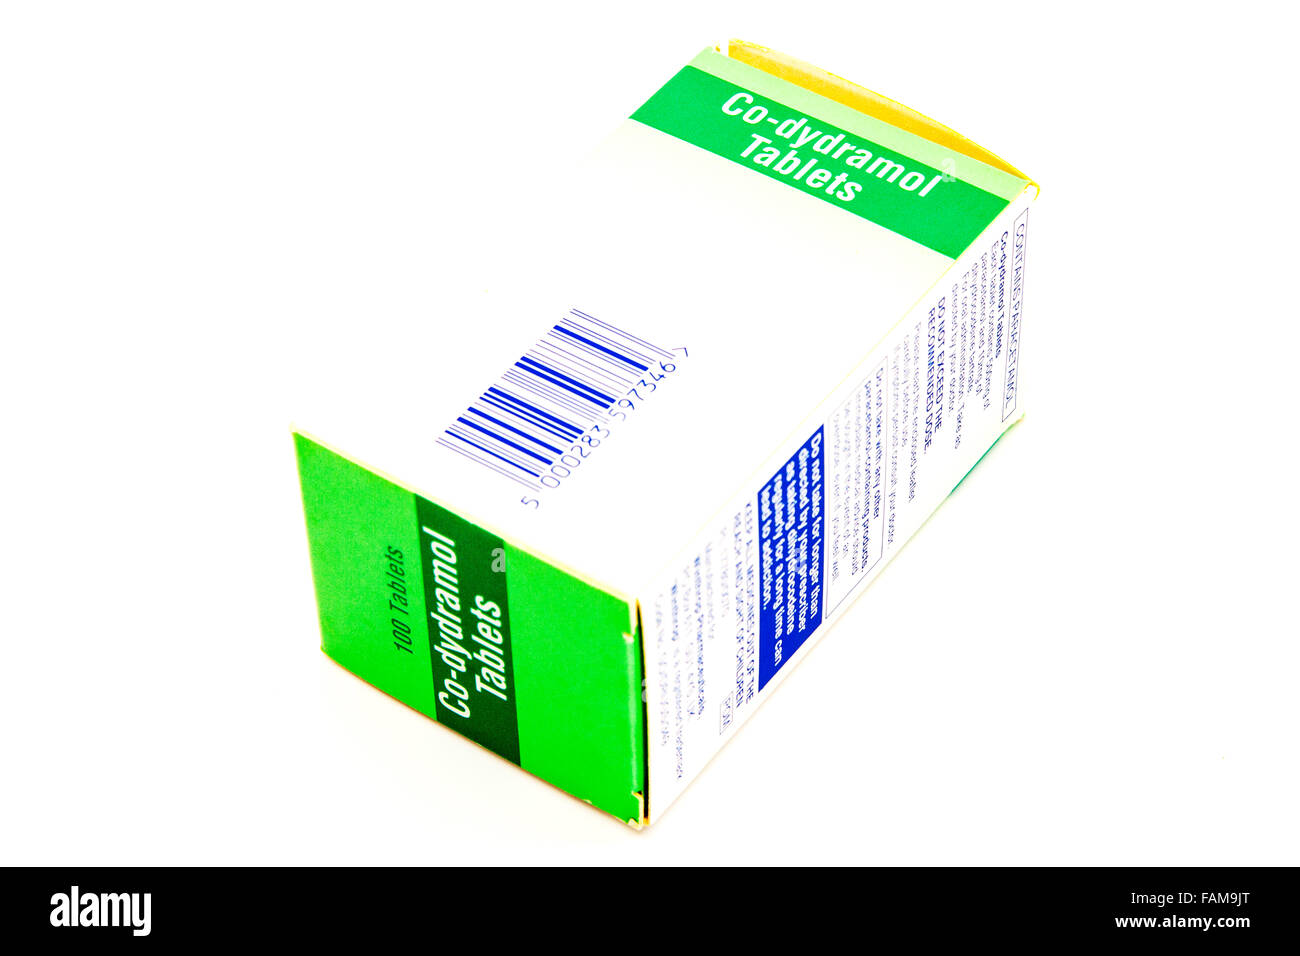 Co-dydramol compresse trattamento trattare dolore moderato-idrocodeina tartrato e paracetamolo casella medicina medici medicinali mg orali Foto Stock